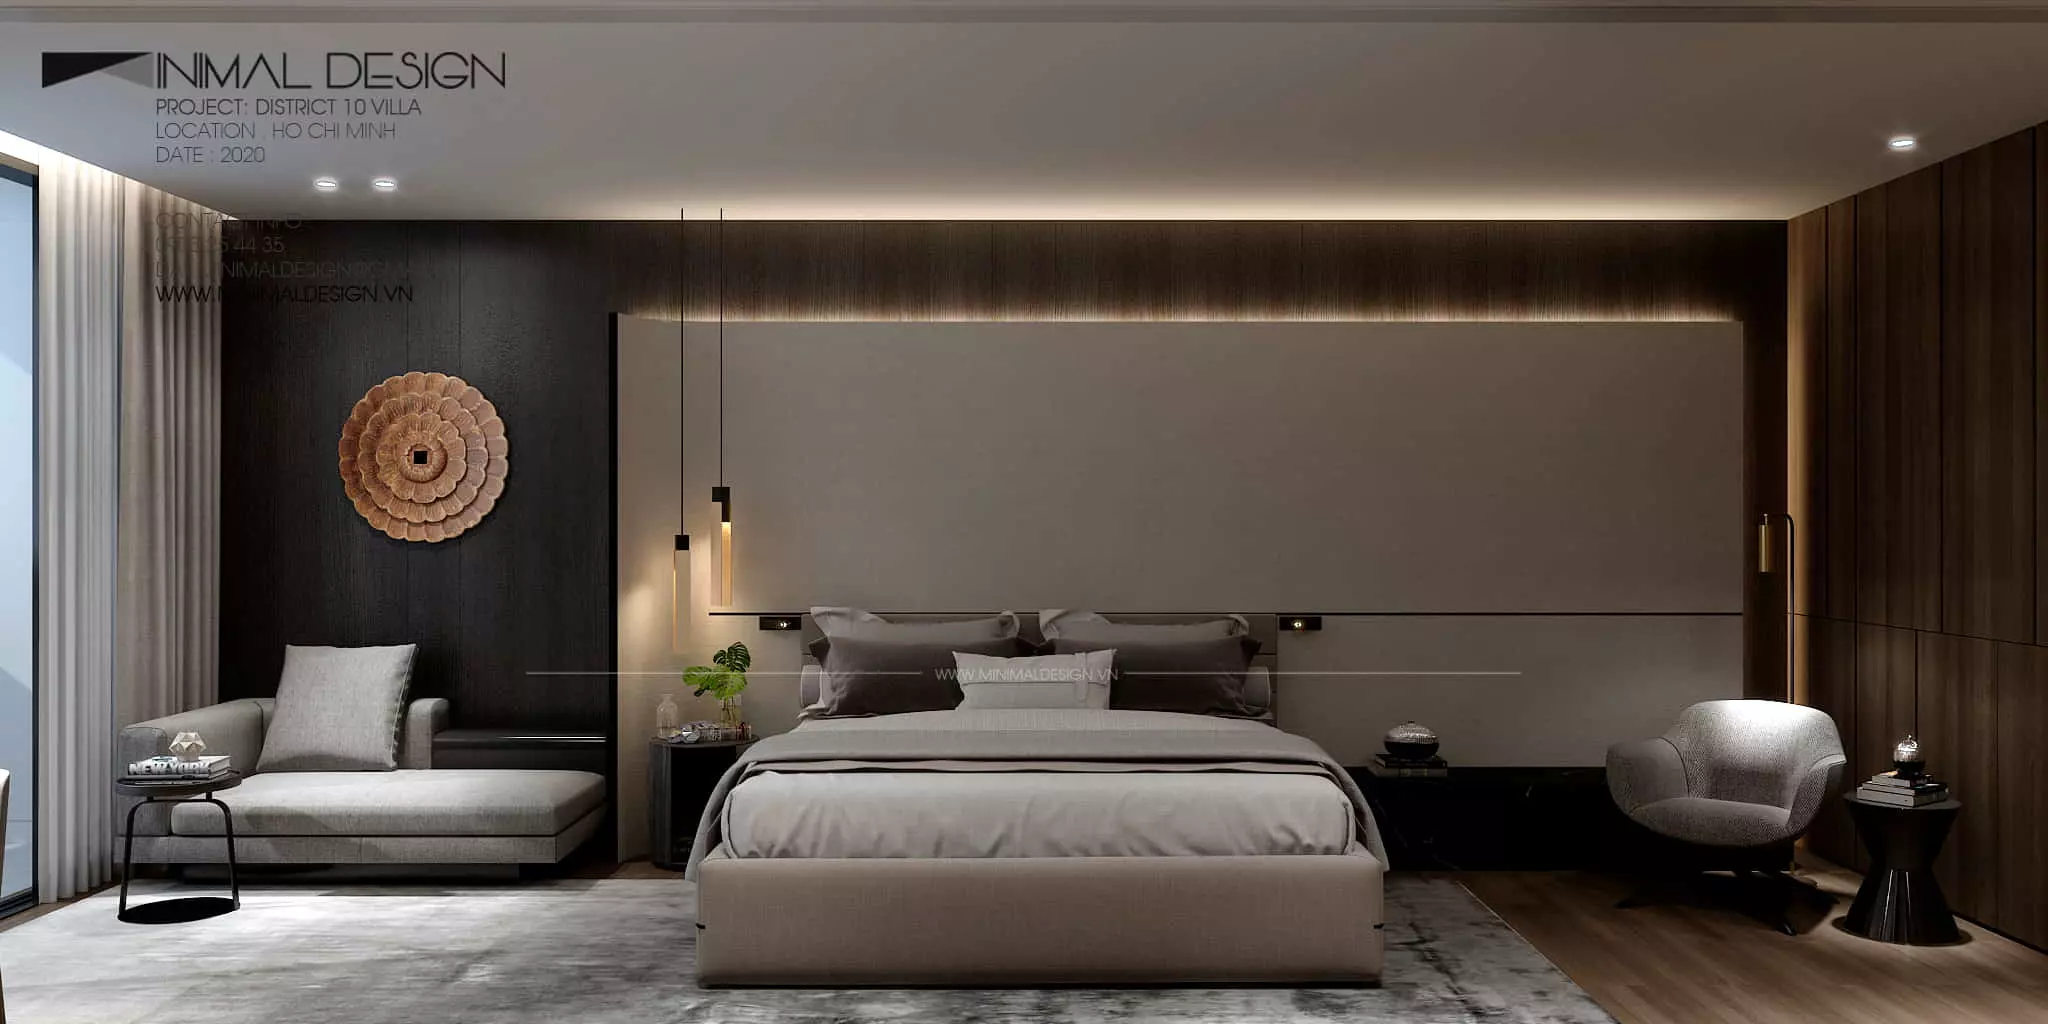 Thiết kế phòng ngủ tối giản đẹp cùng với các gam màu trung tính và họa tiết đơn giản đang trở thành xu hướng và ngày càng thịnh hành